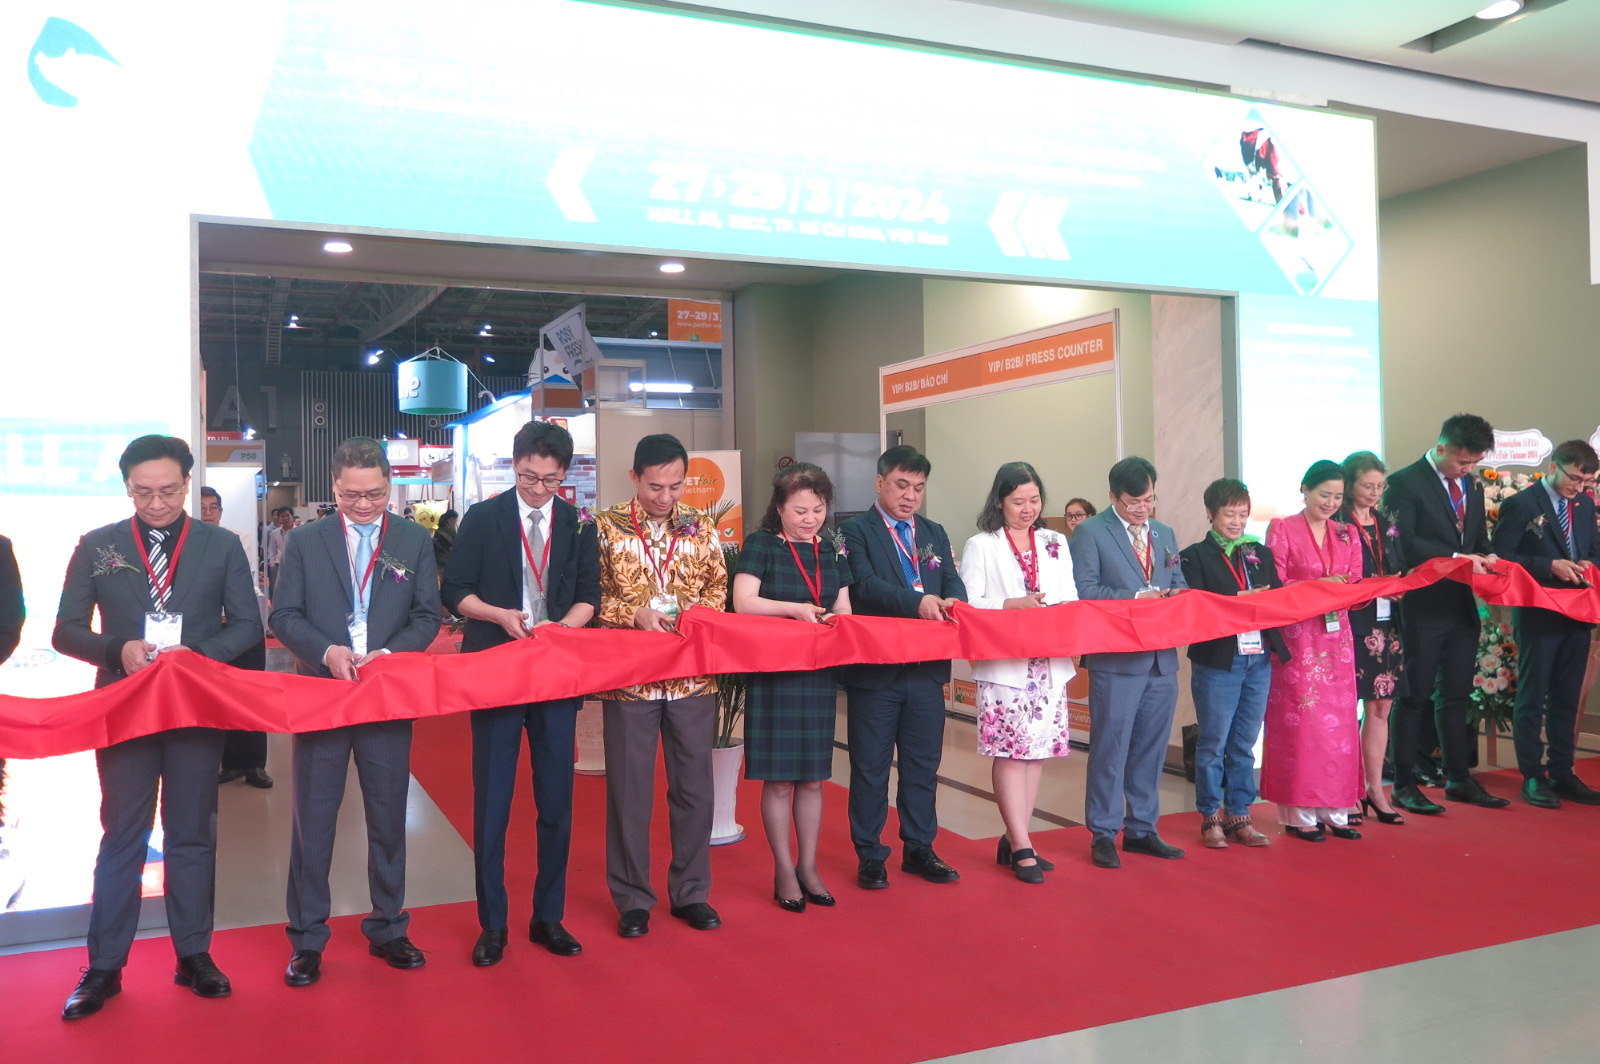 Triển lãm quốc tế chuyên ngành công nghệ, sản phẩm, dịch vụ chăm sóc thú cưng tại Việt Nam - Petfair Vietnam 2024 khai mạc sáng nay tại Trung tâm hội chợ và triển lãm Sài Gòn (SECC) (quận 7, TP.HCM).